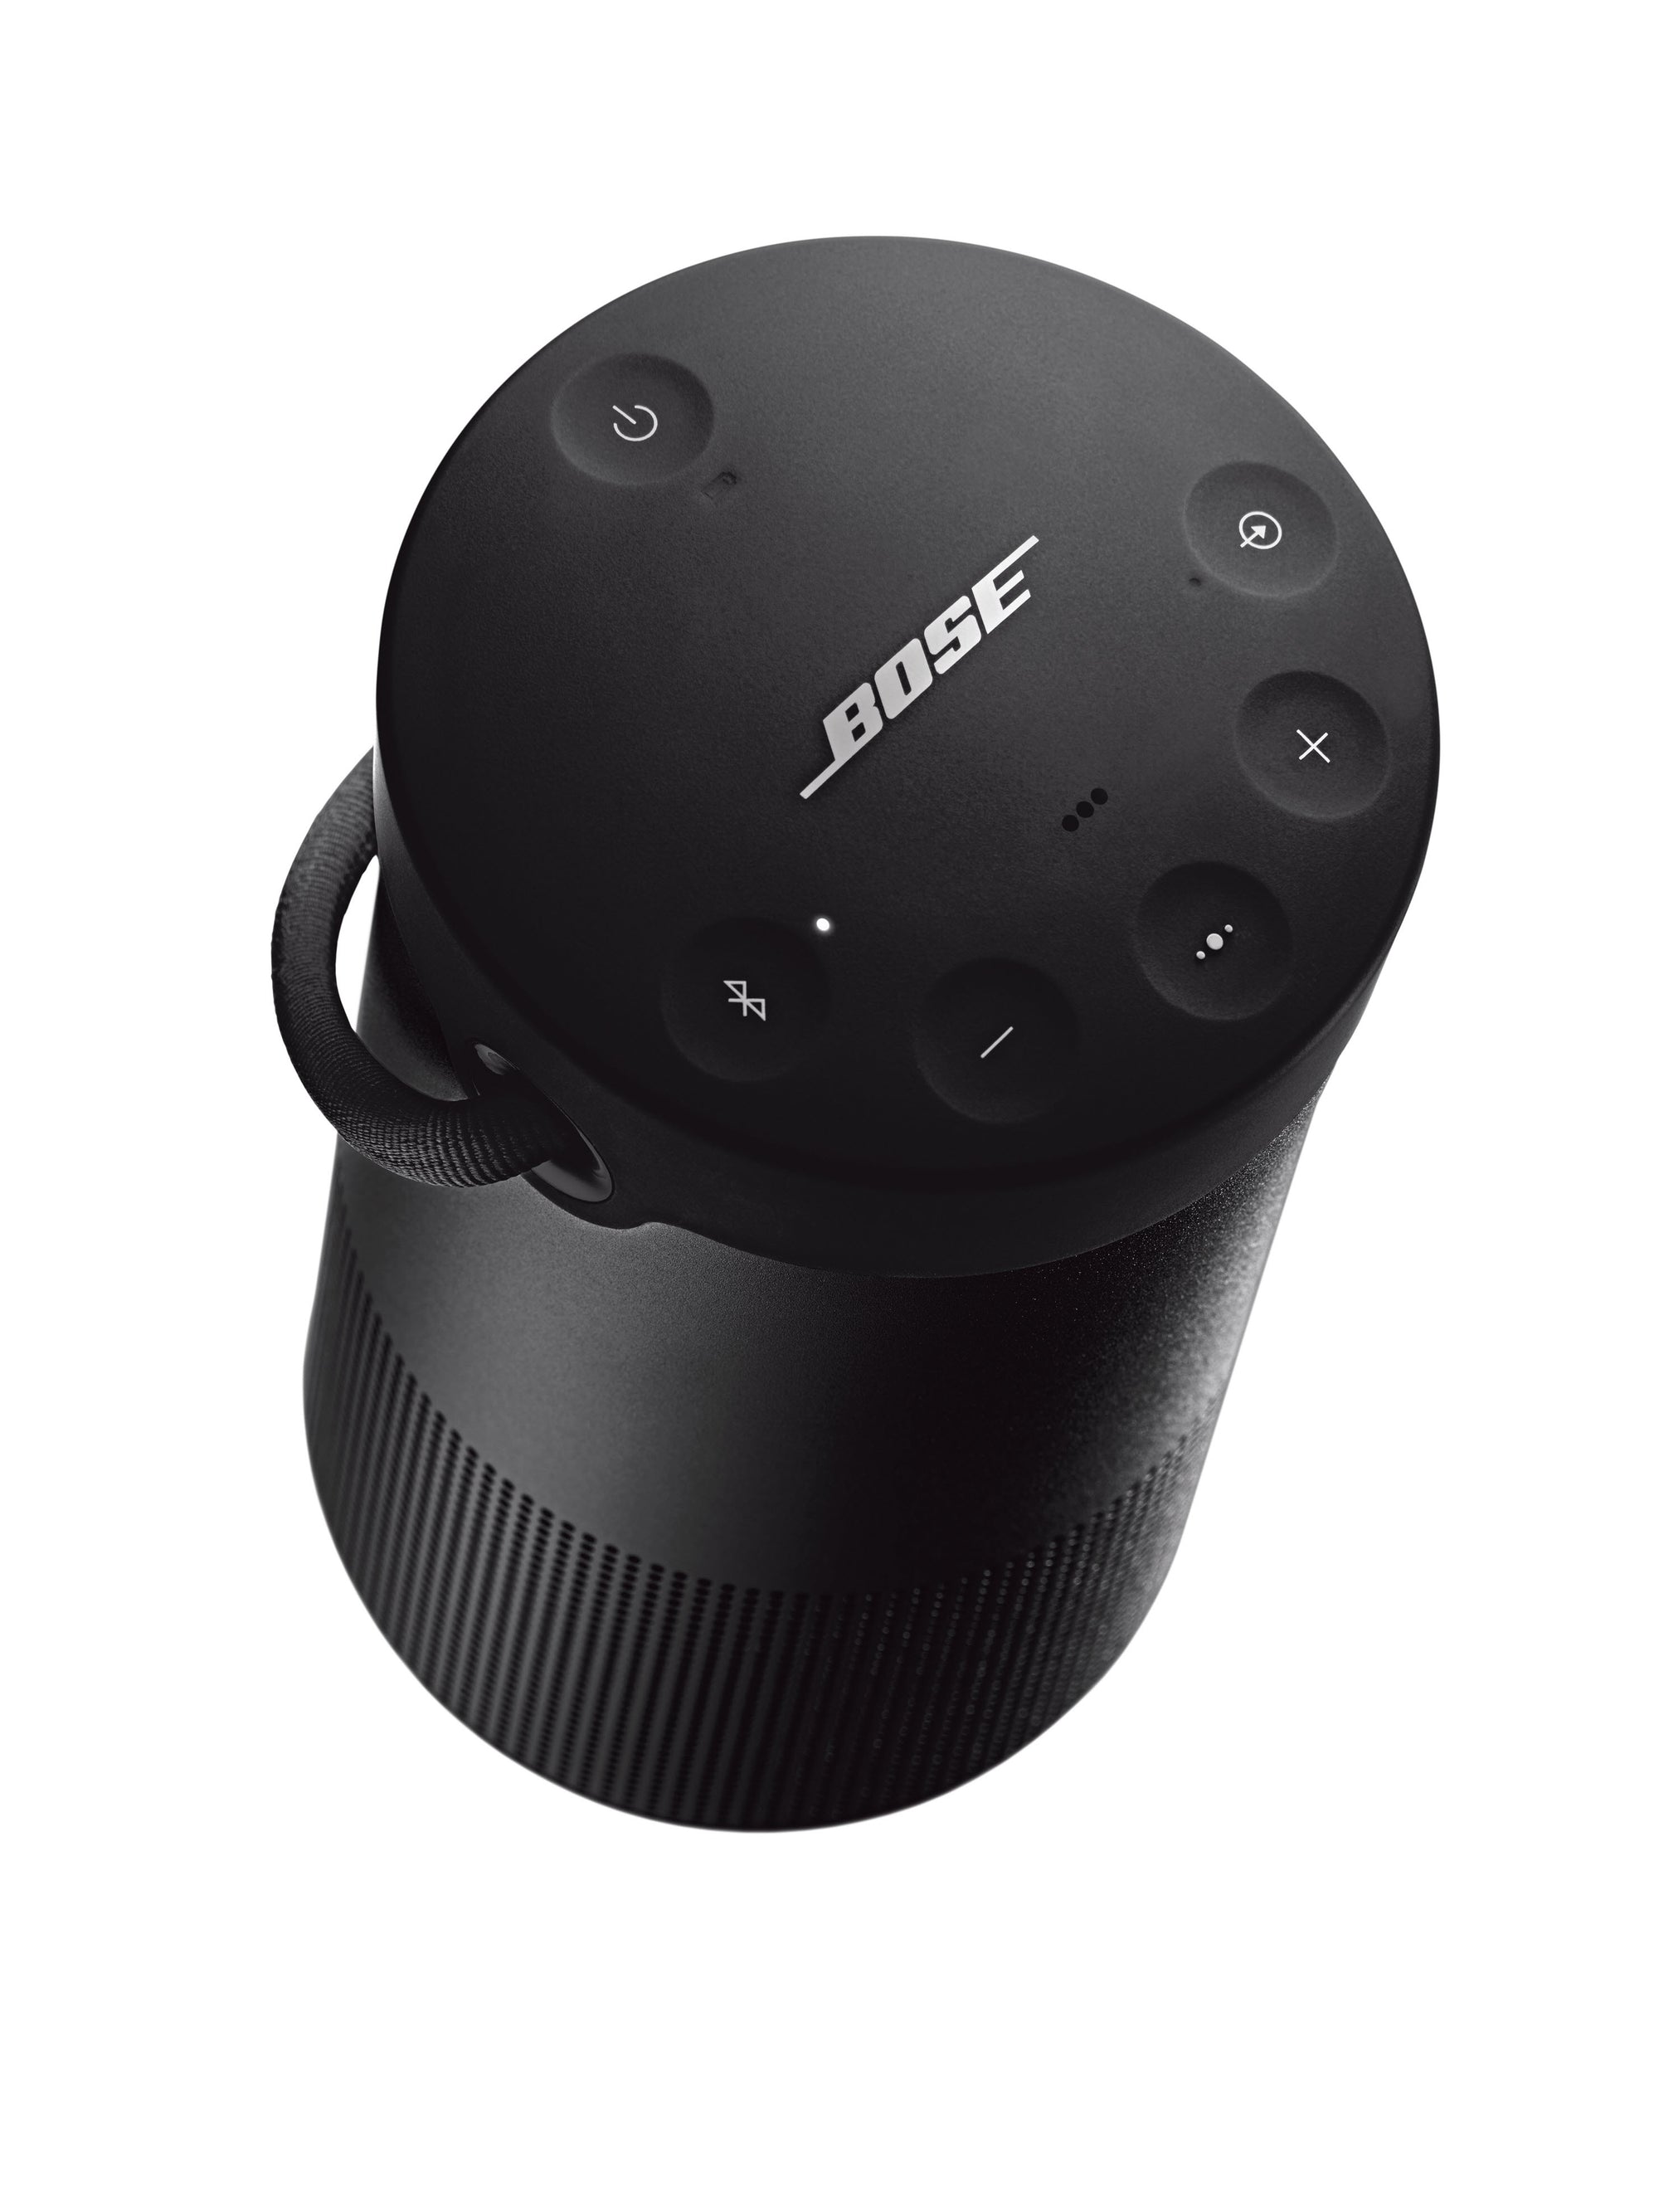 Bose SoundLink Revolve+ II Bluetooth Speaker Black